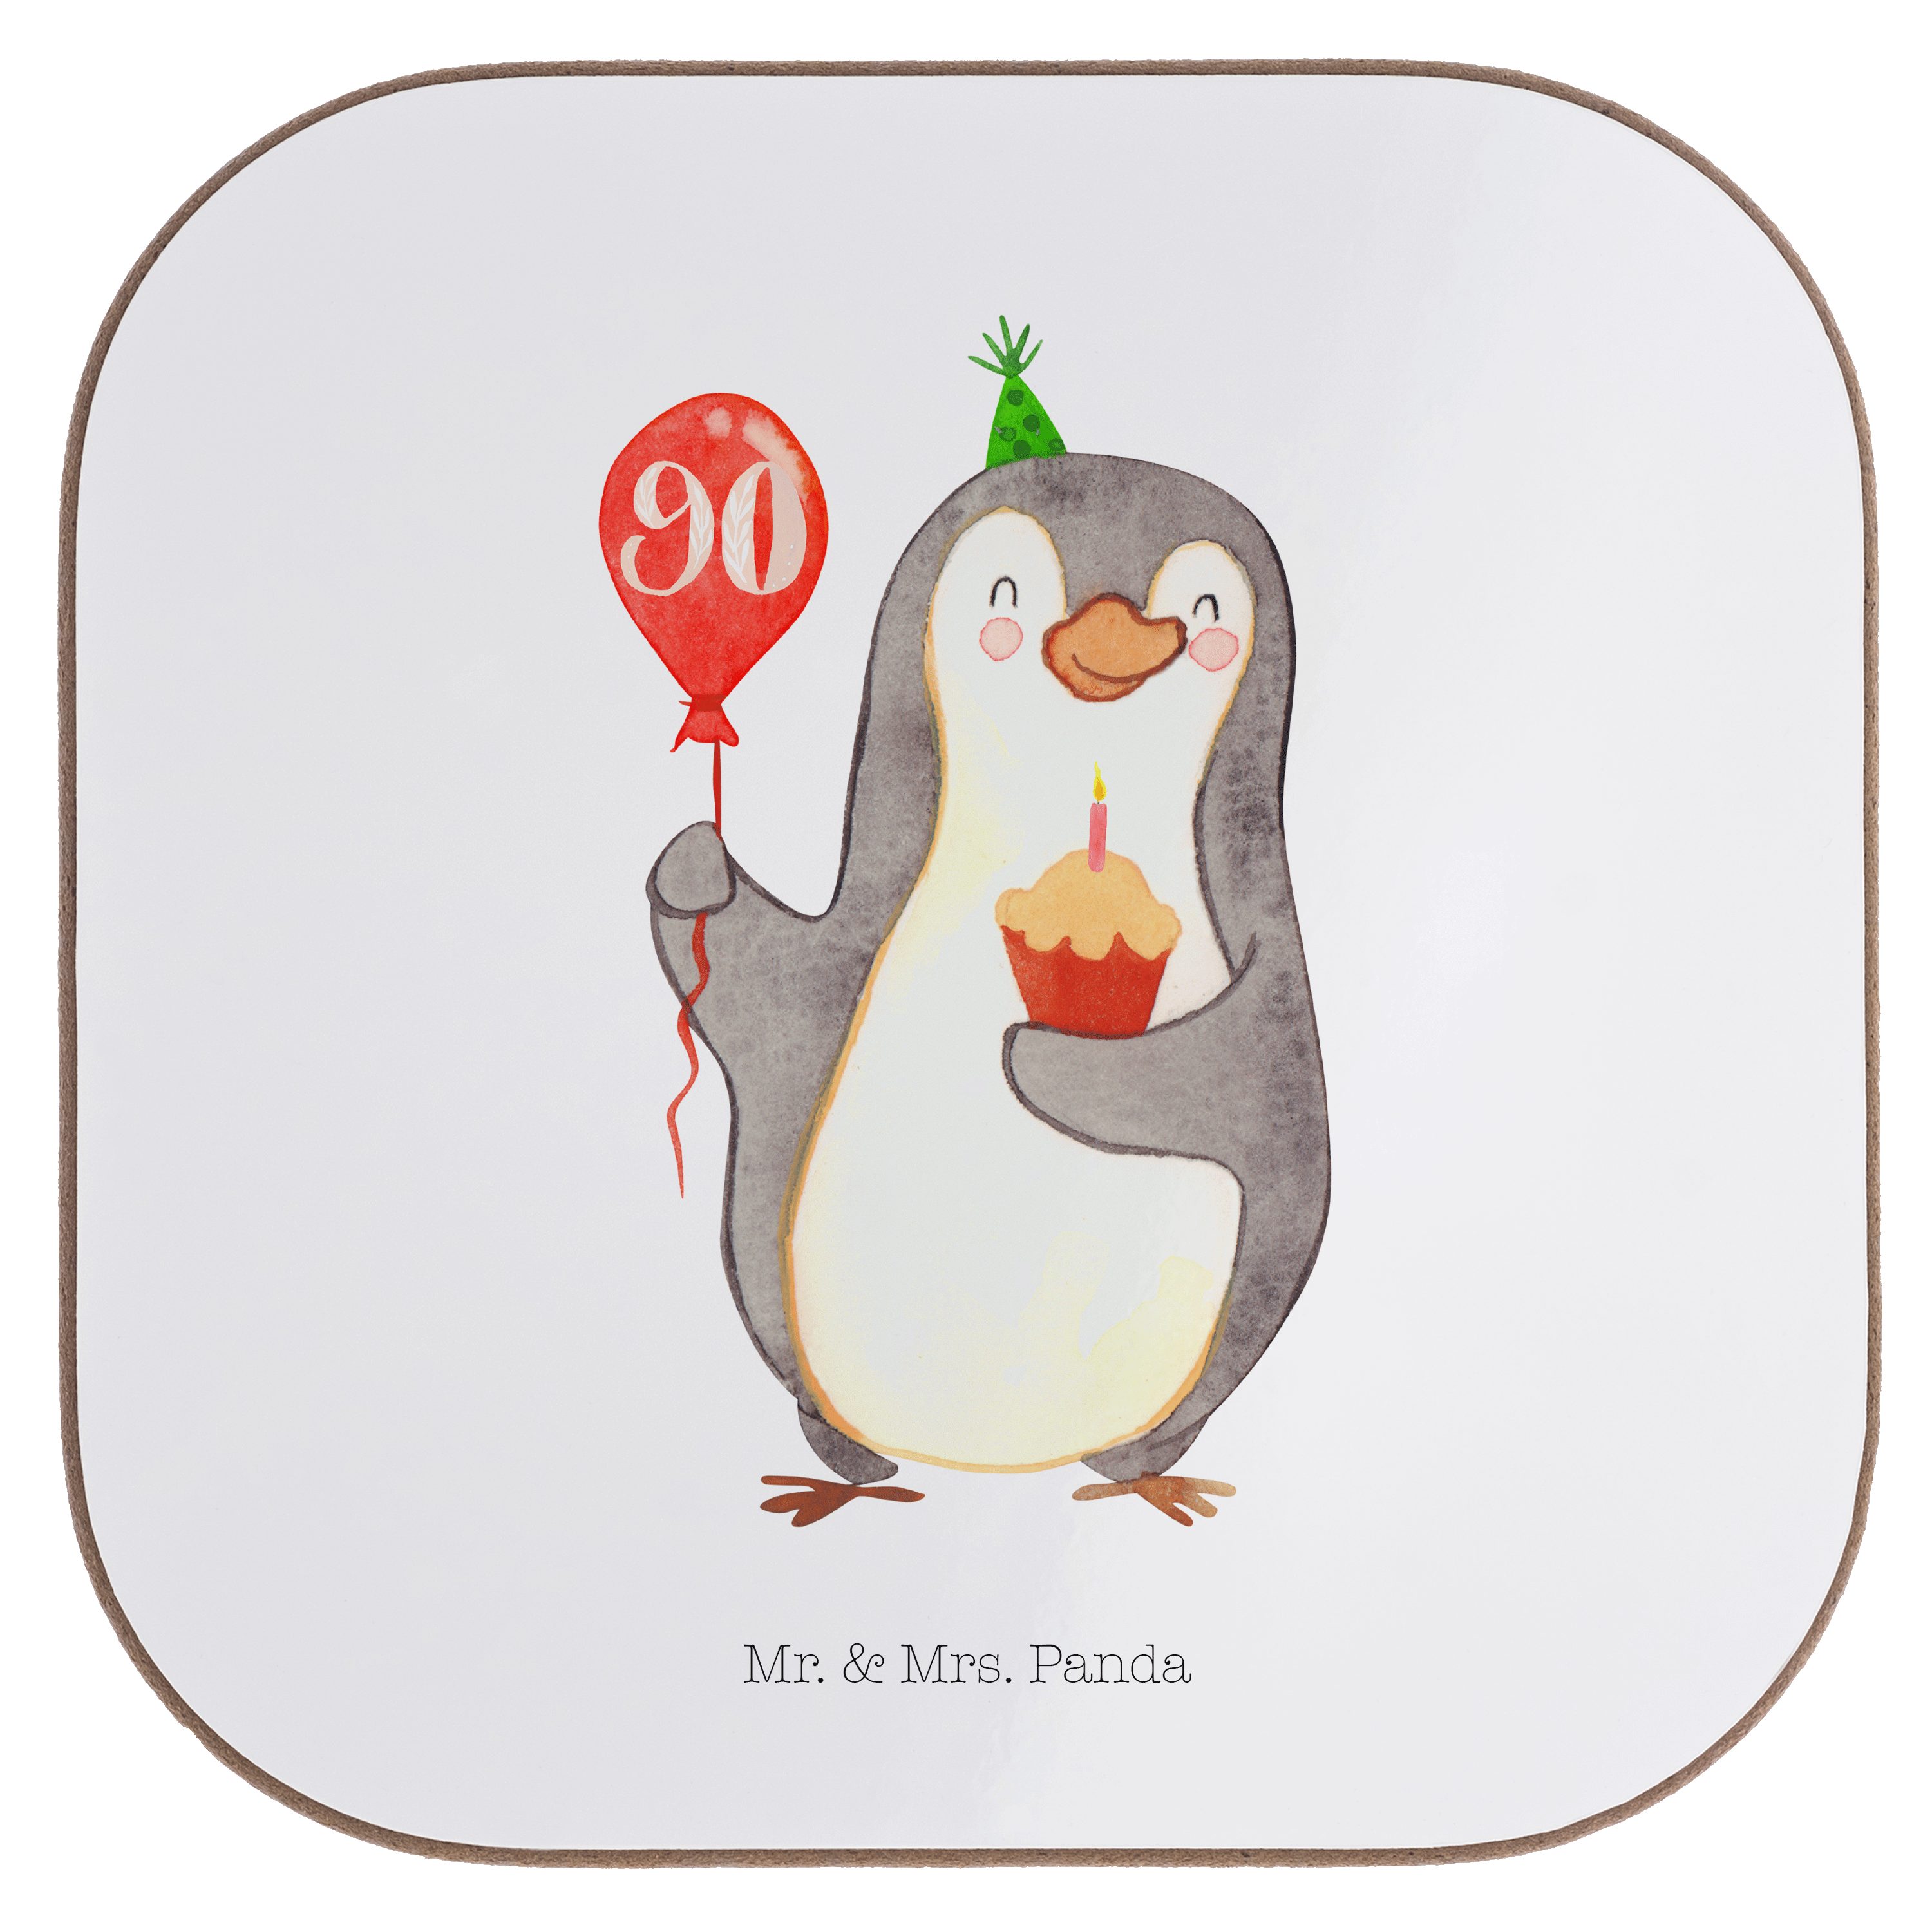 Mr. & Mrs. Geschenk, 1-tlg. Geburtstag Getränkeuntersetzer Luftballon Pinguin 90. Panda - Weiß - Glasuntersetzer